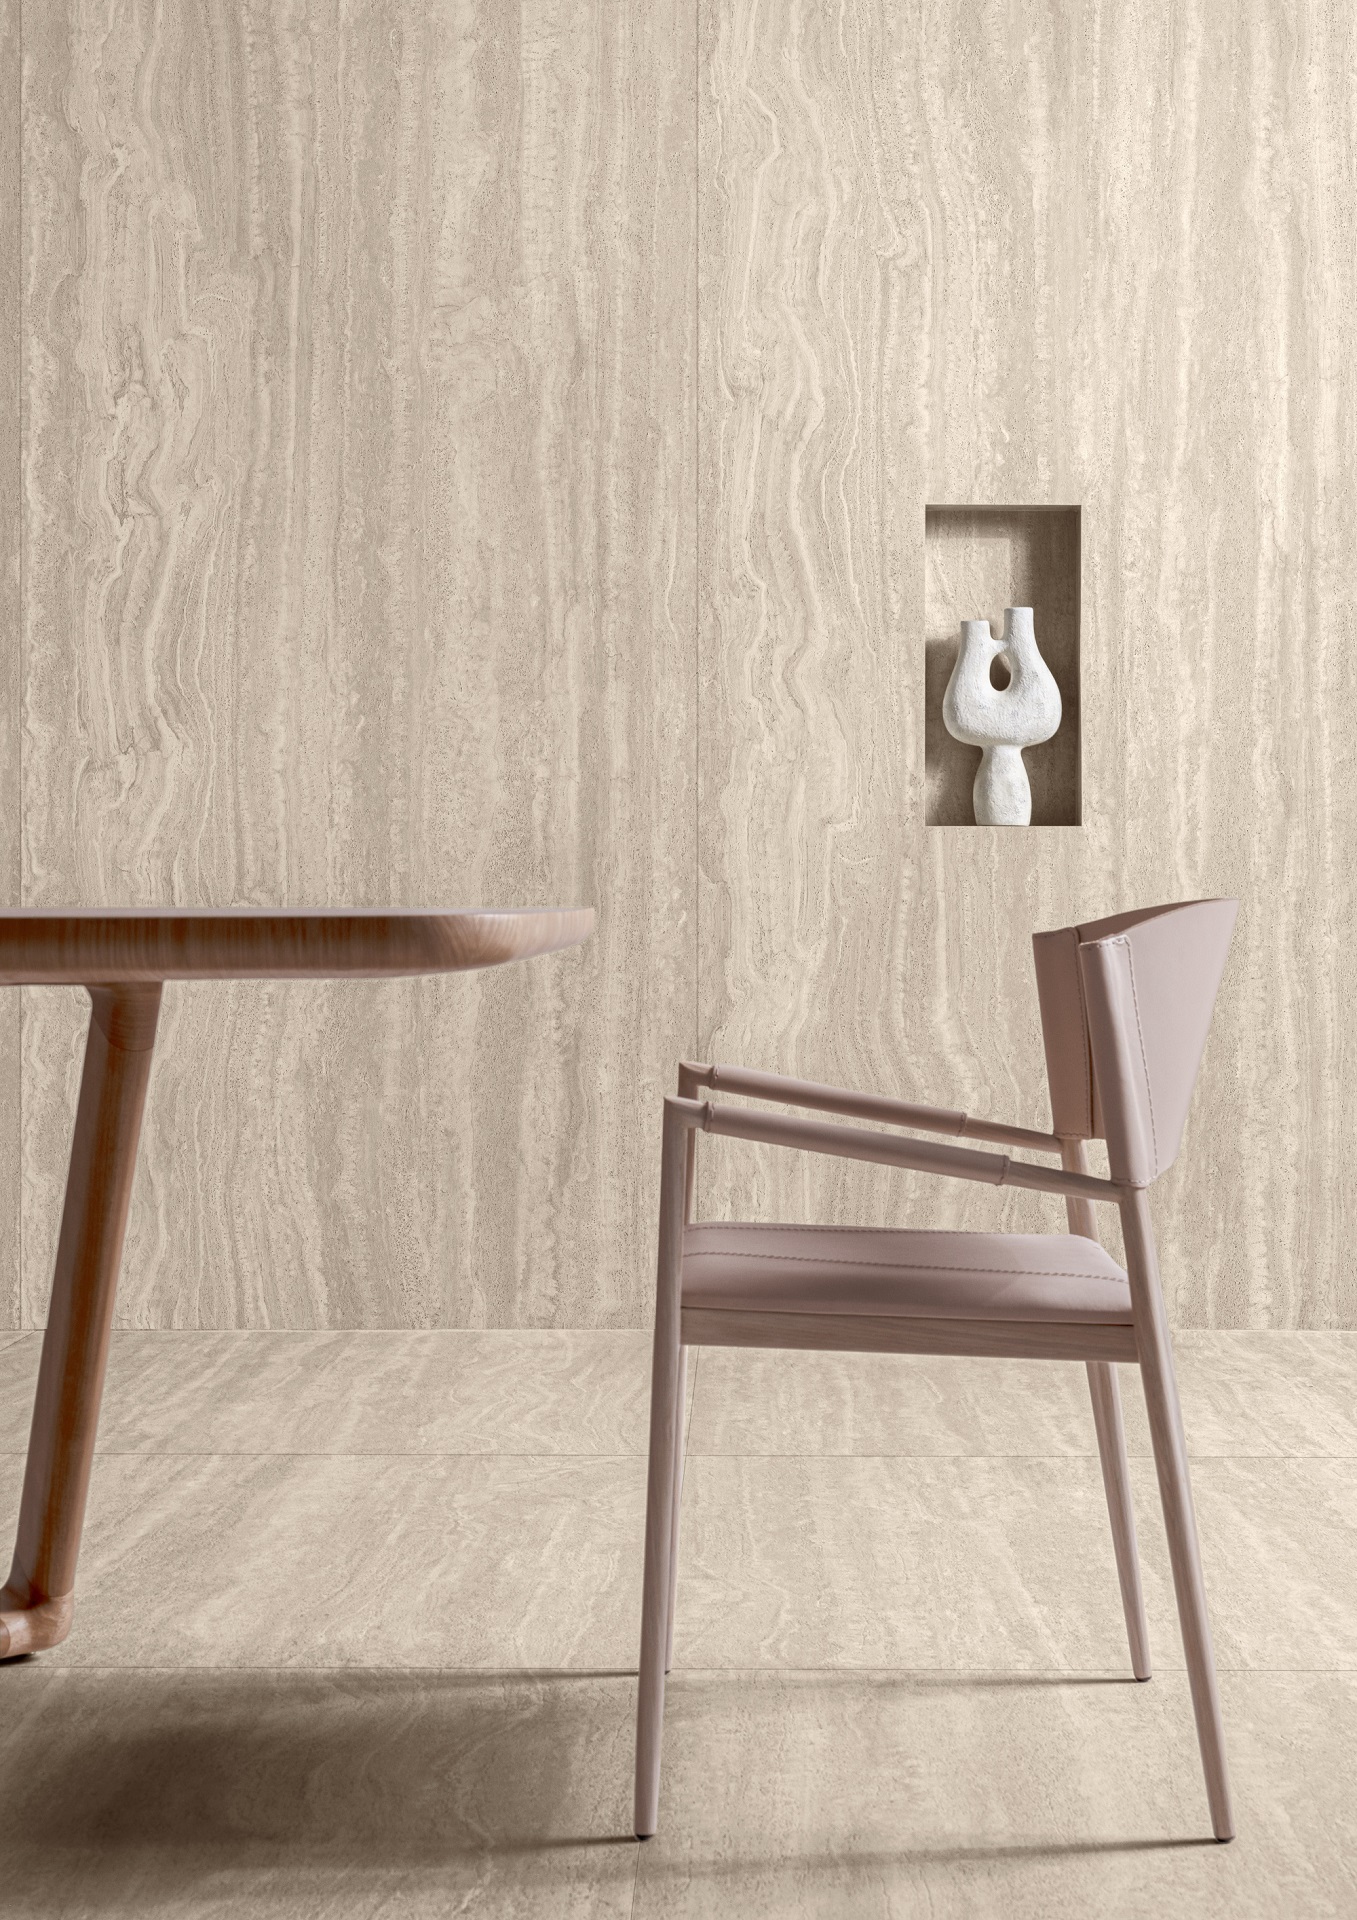 Detalhe de ambiente com piso e parede em revestimento que reproduz travertino. Há uma mesa, uma cadeira e uma escultura